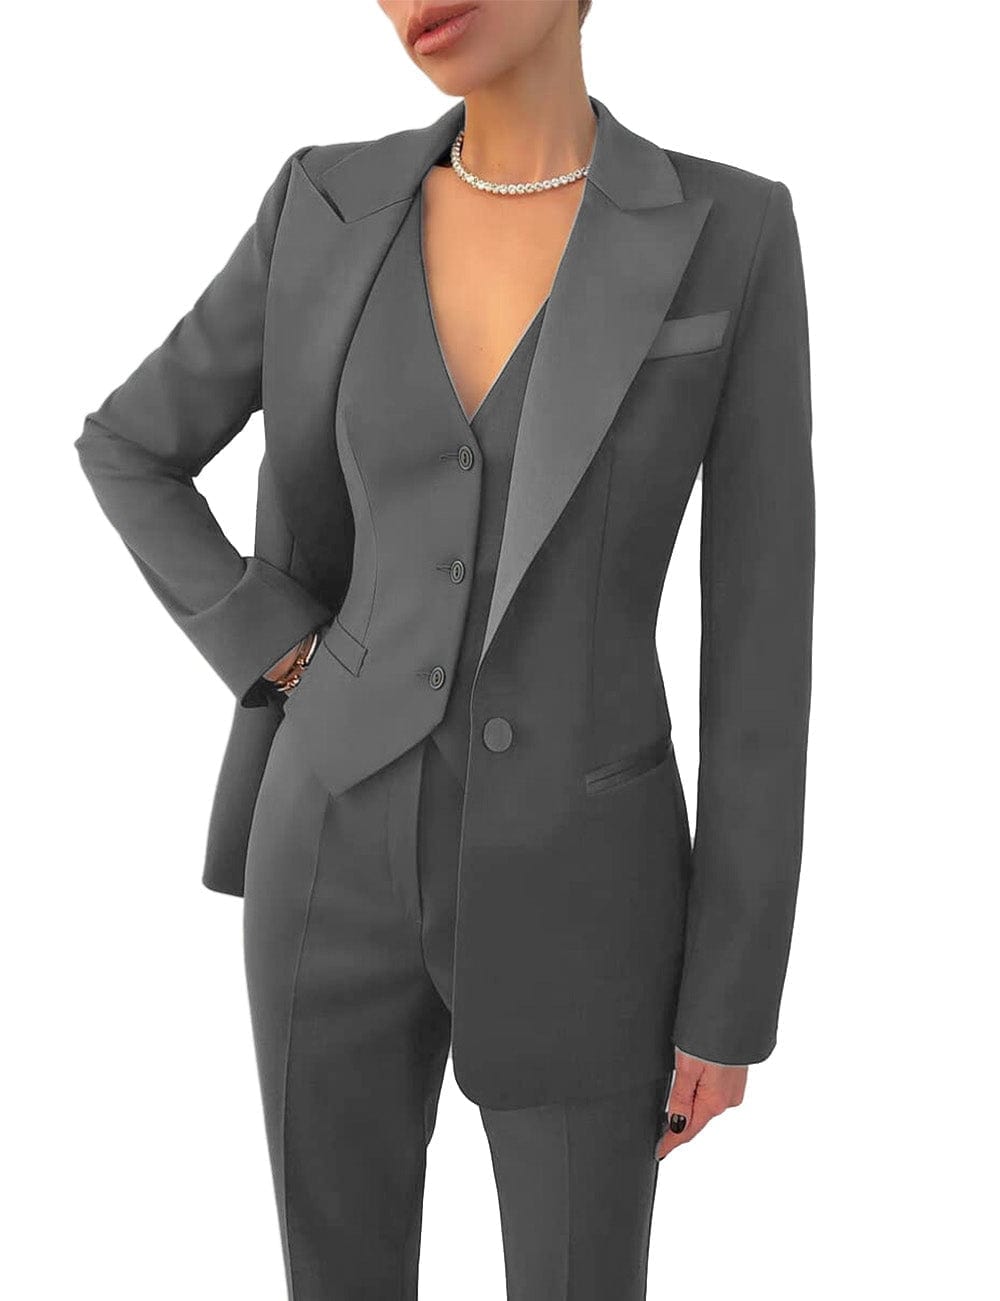 Women's Business 3 Pieces Slim Fit Solid Color Peak Lapel Suit